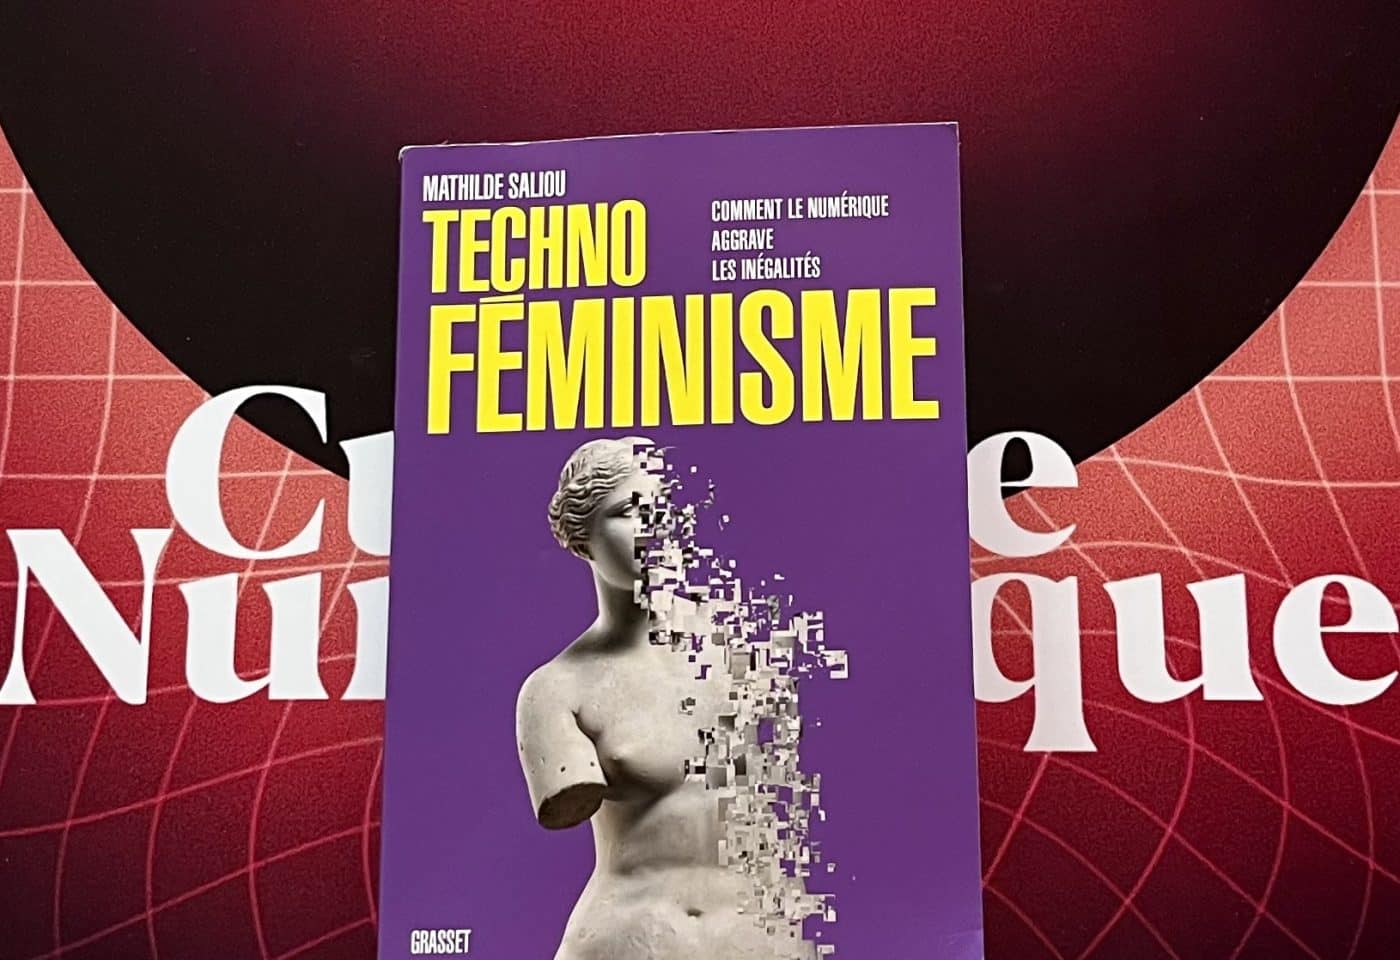 « Technoféminisme, comment le numérique aggrave les inégalités », le livre de la journaliste Mathilde Saliou